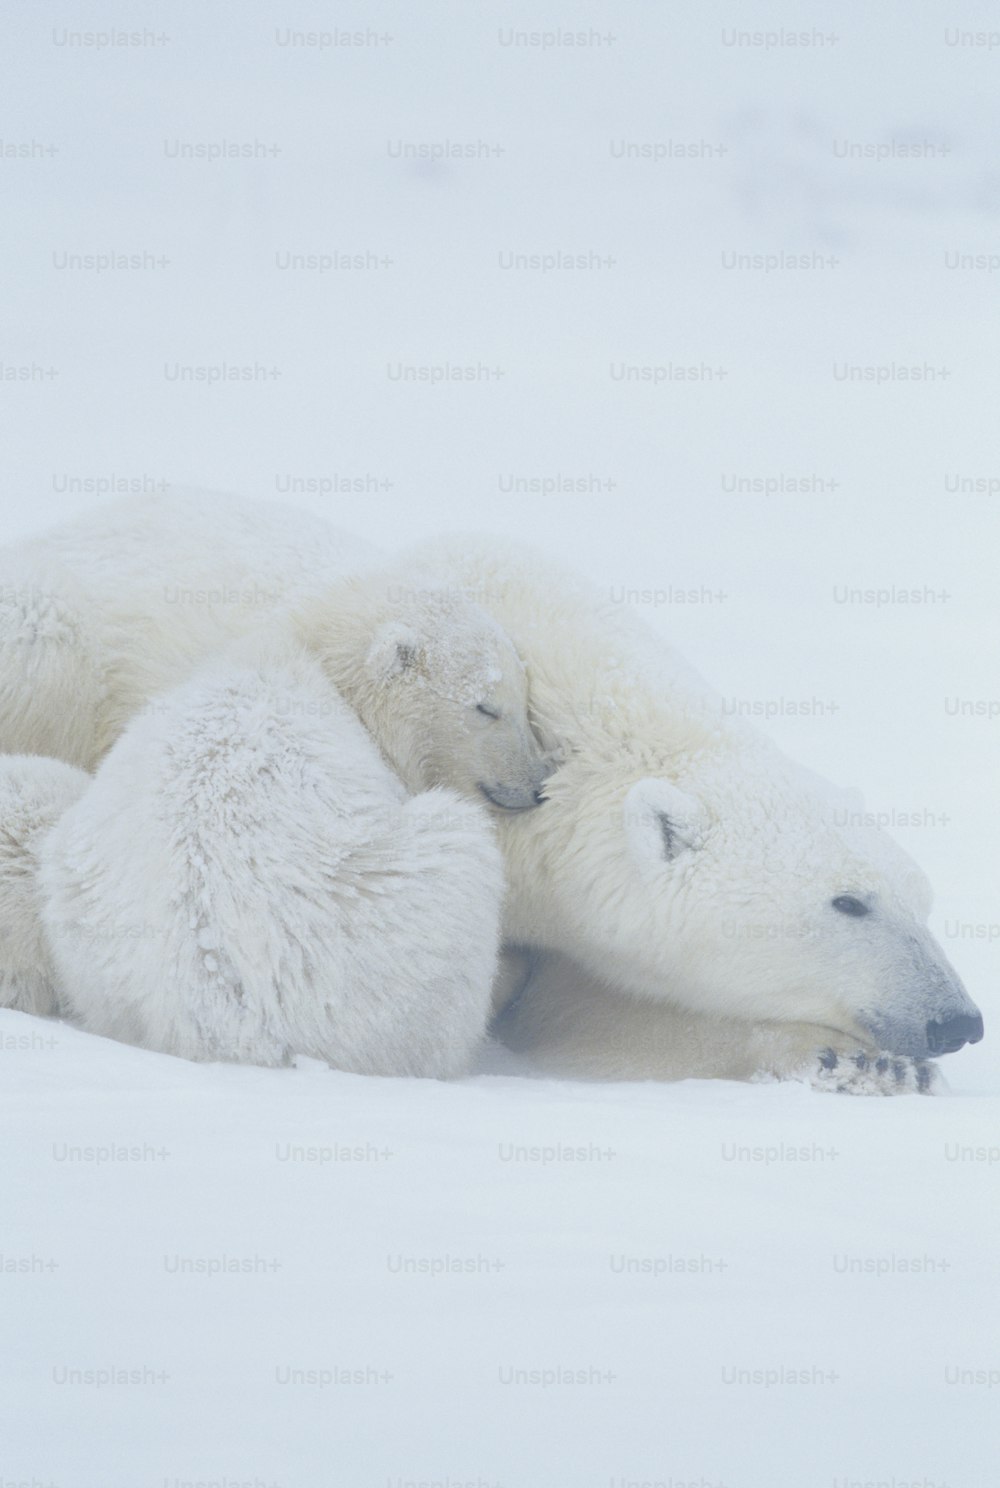 Deux ours polaires se couchent dans la neige